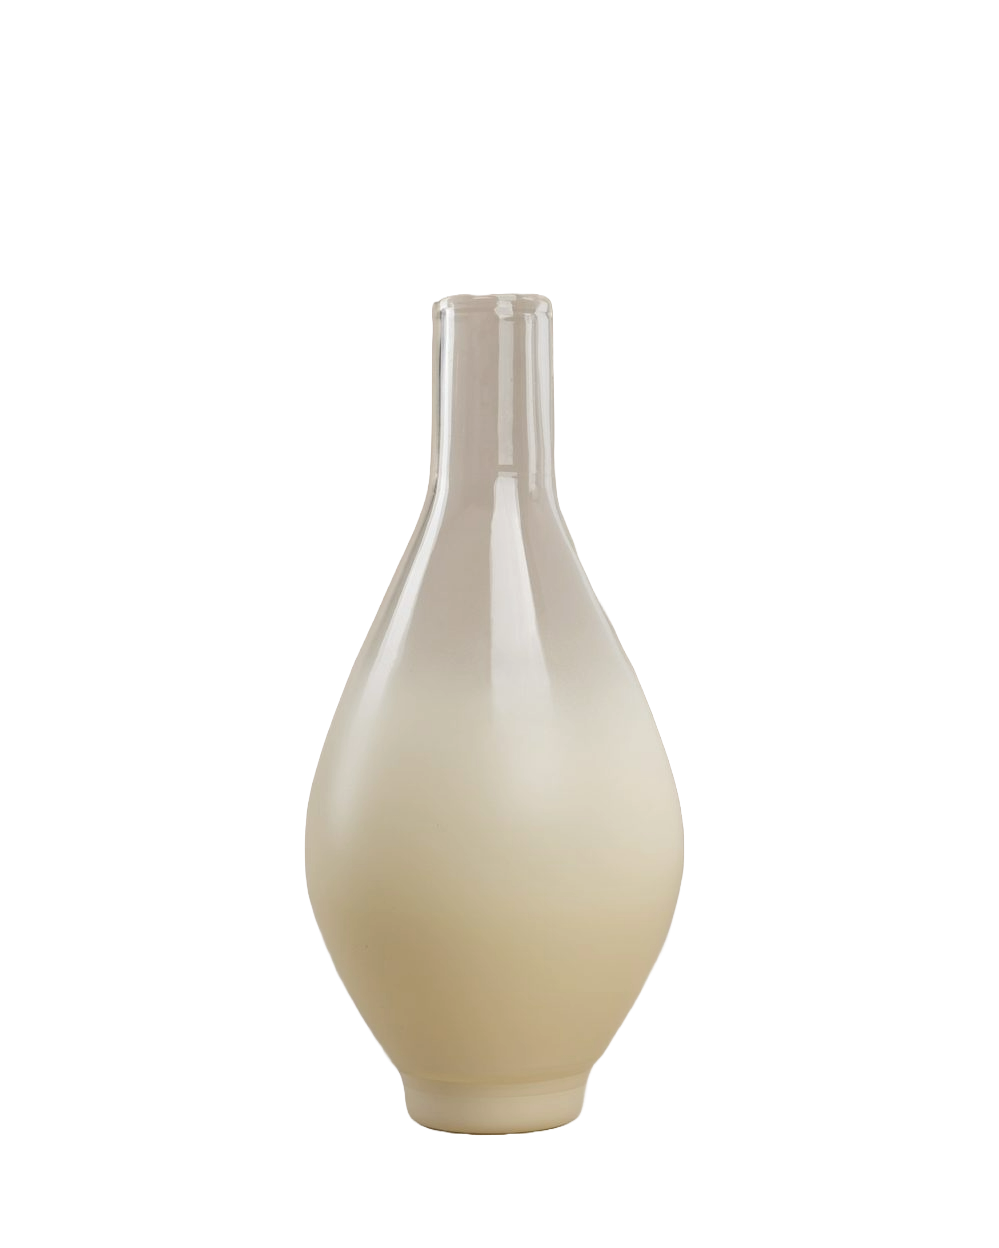 Los Objetos Decorativos Beige Glass Degrade Vase